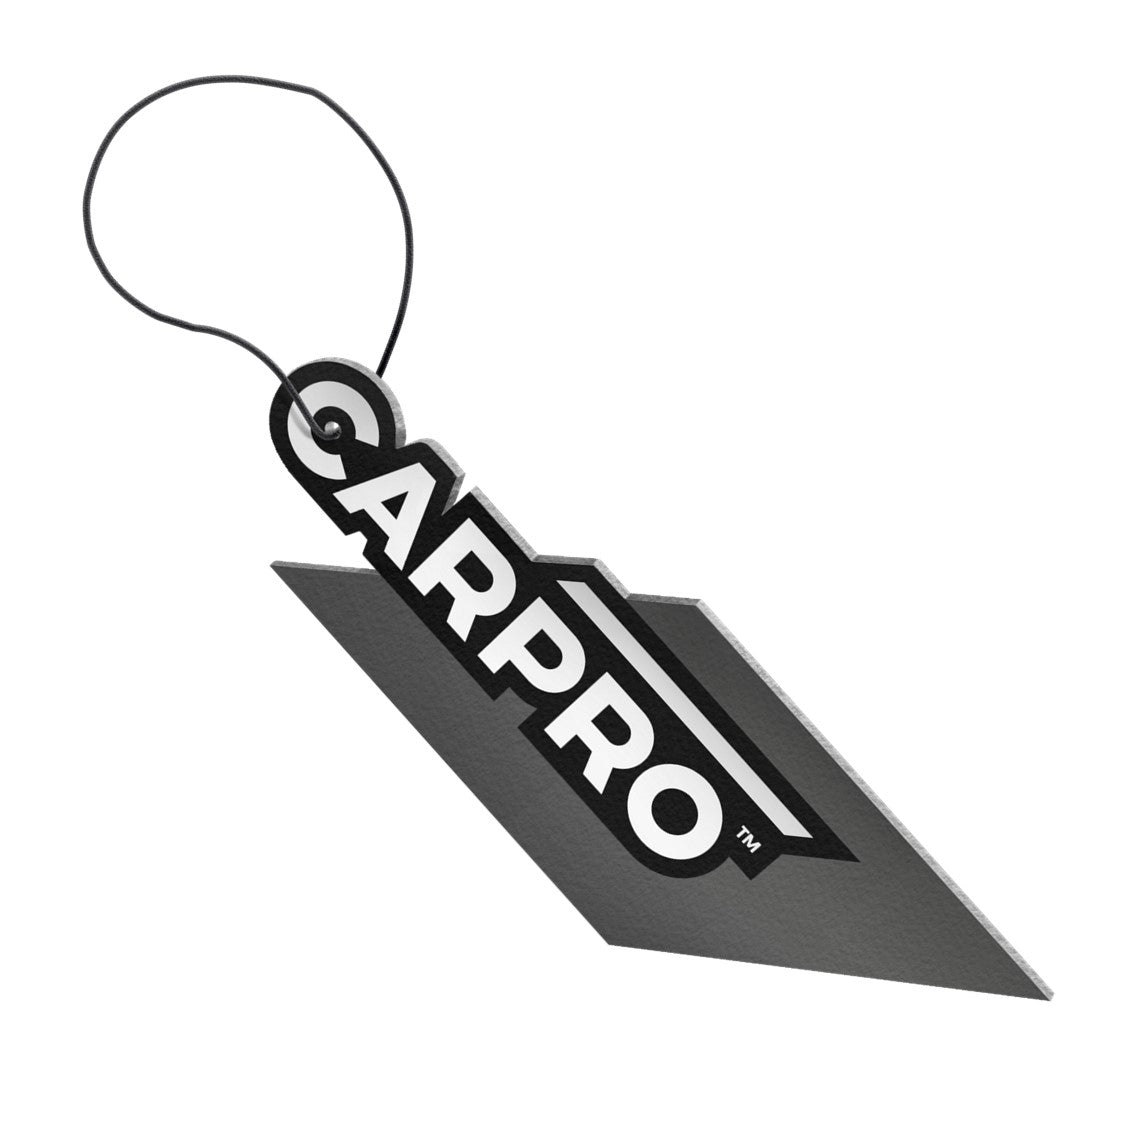 CARPRO Air freshner - Lime-Mint